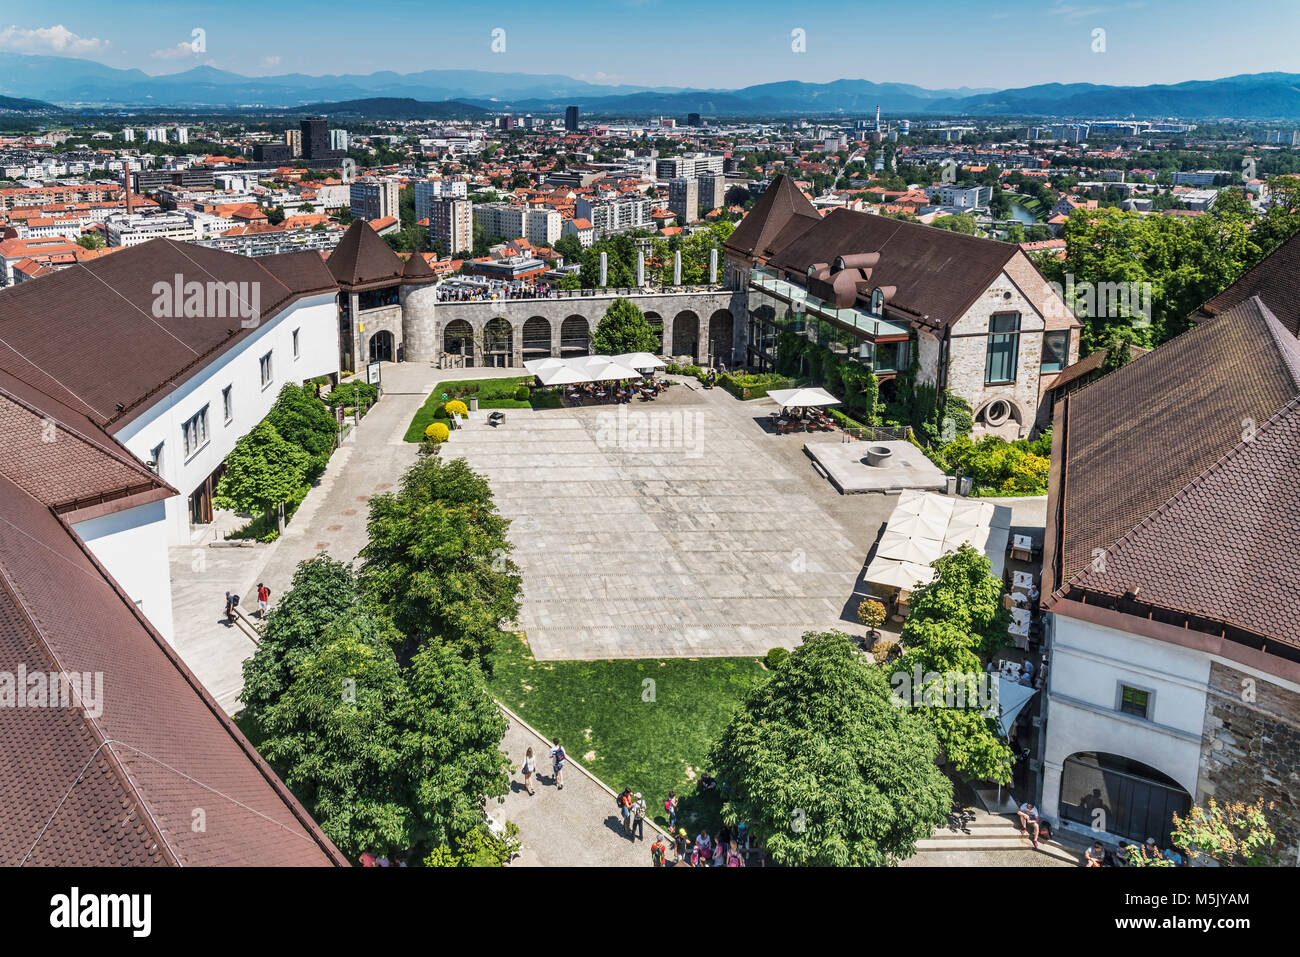 Blick auf den Innenhof der Burg von Ljubljana. Die Burg von Ljubljana ist eine mächtige mittelalterliche Festung und das Symbol der slowenischen Hauptstadt. Stockfoto